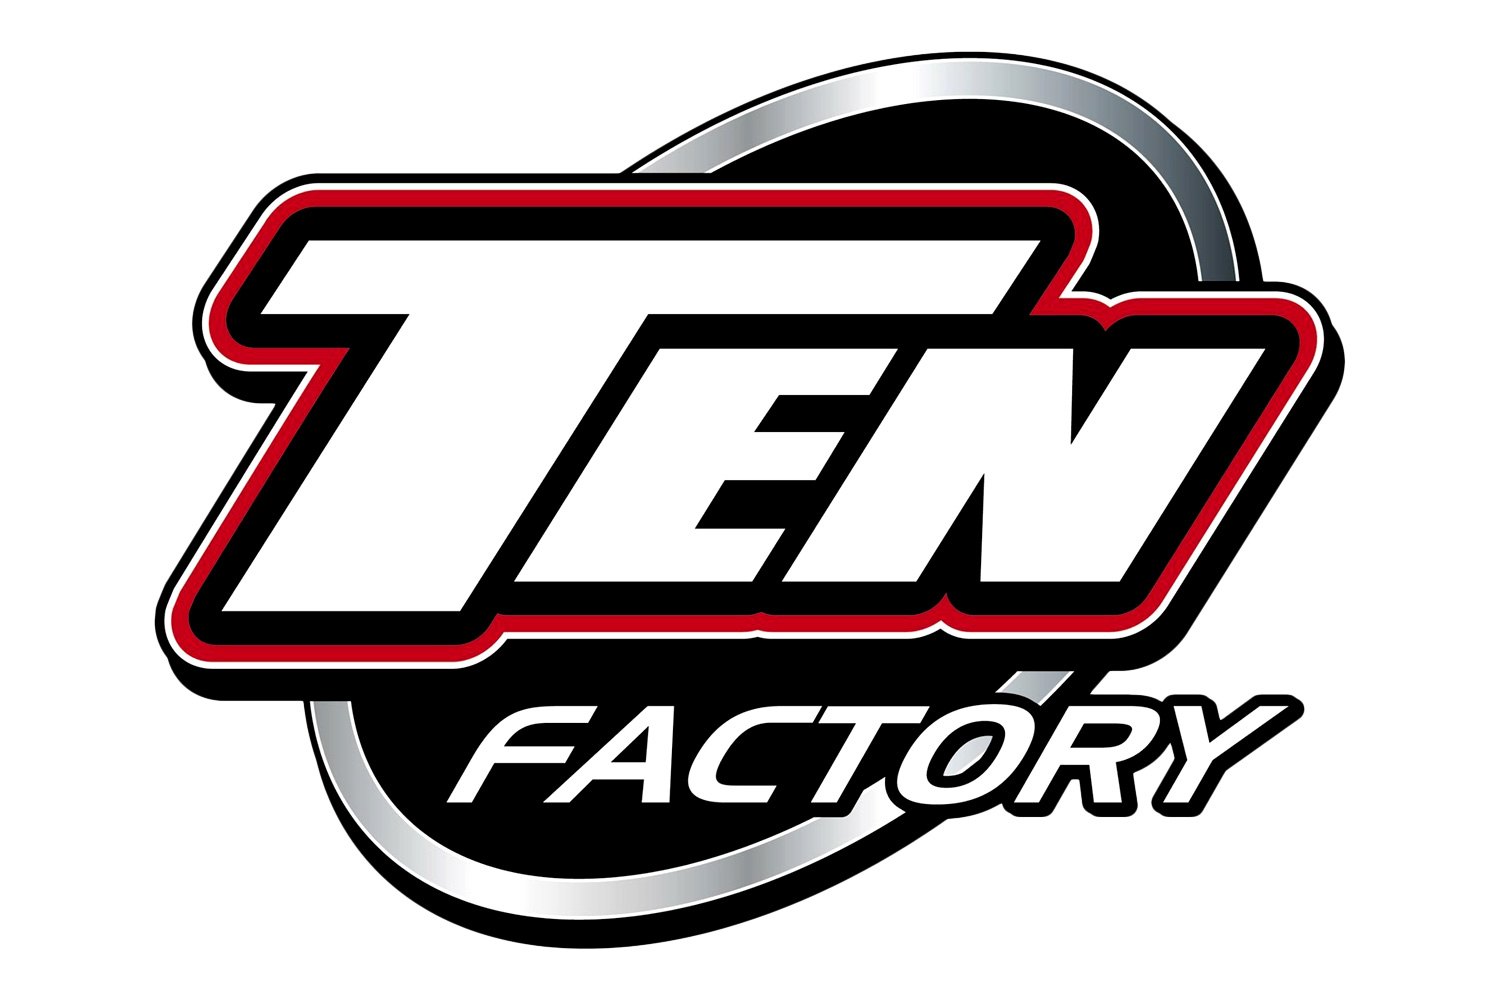 Ten Factory